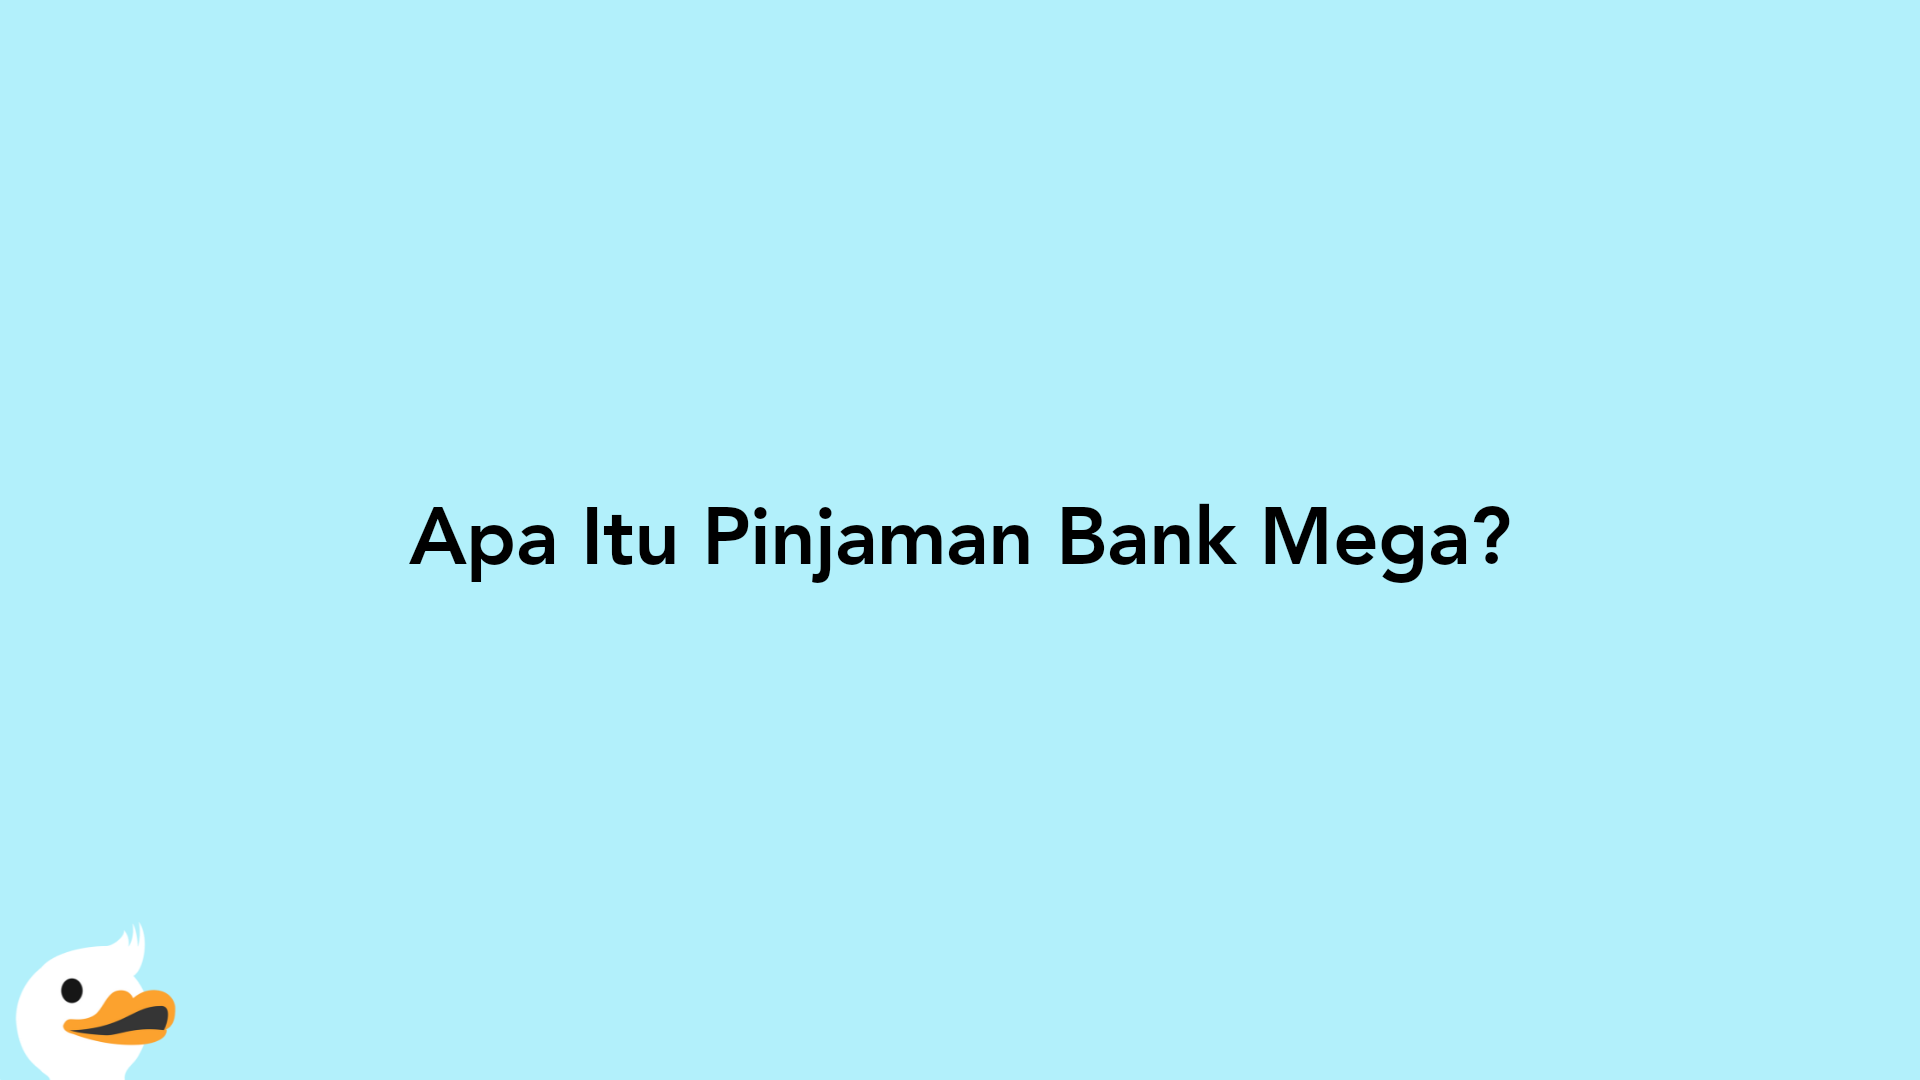 Apa Itu Pinjaman Bank Mega?